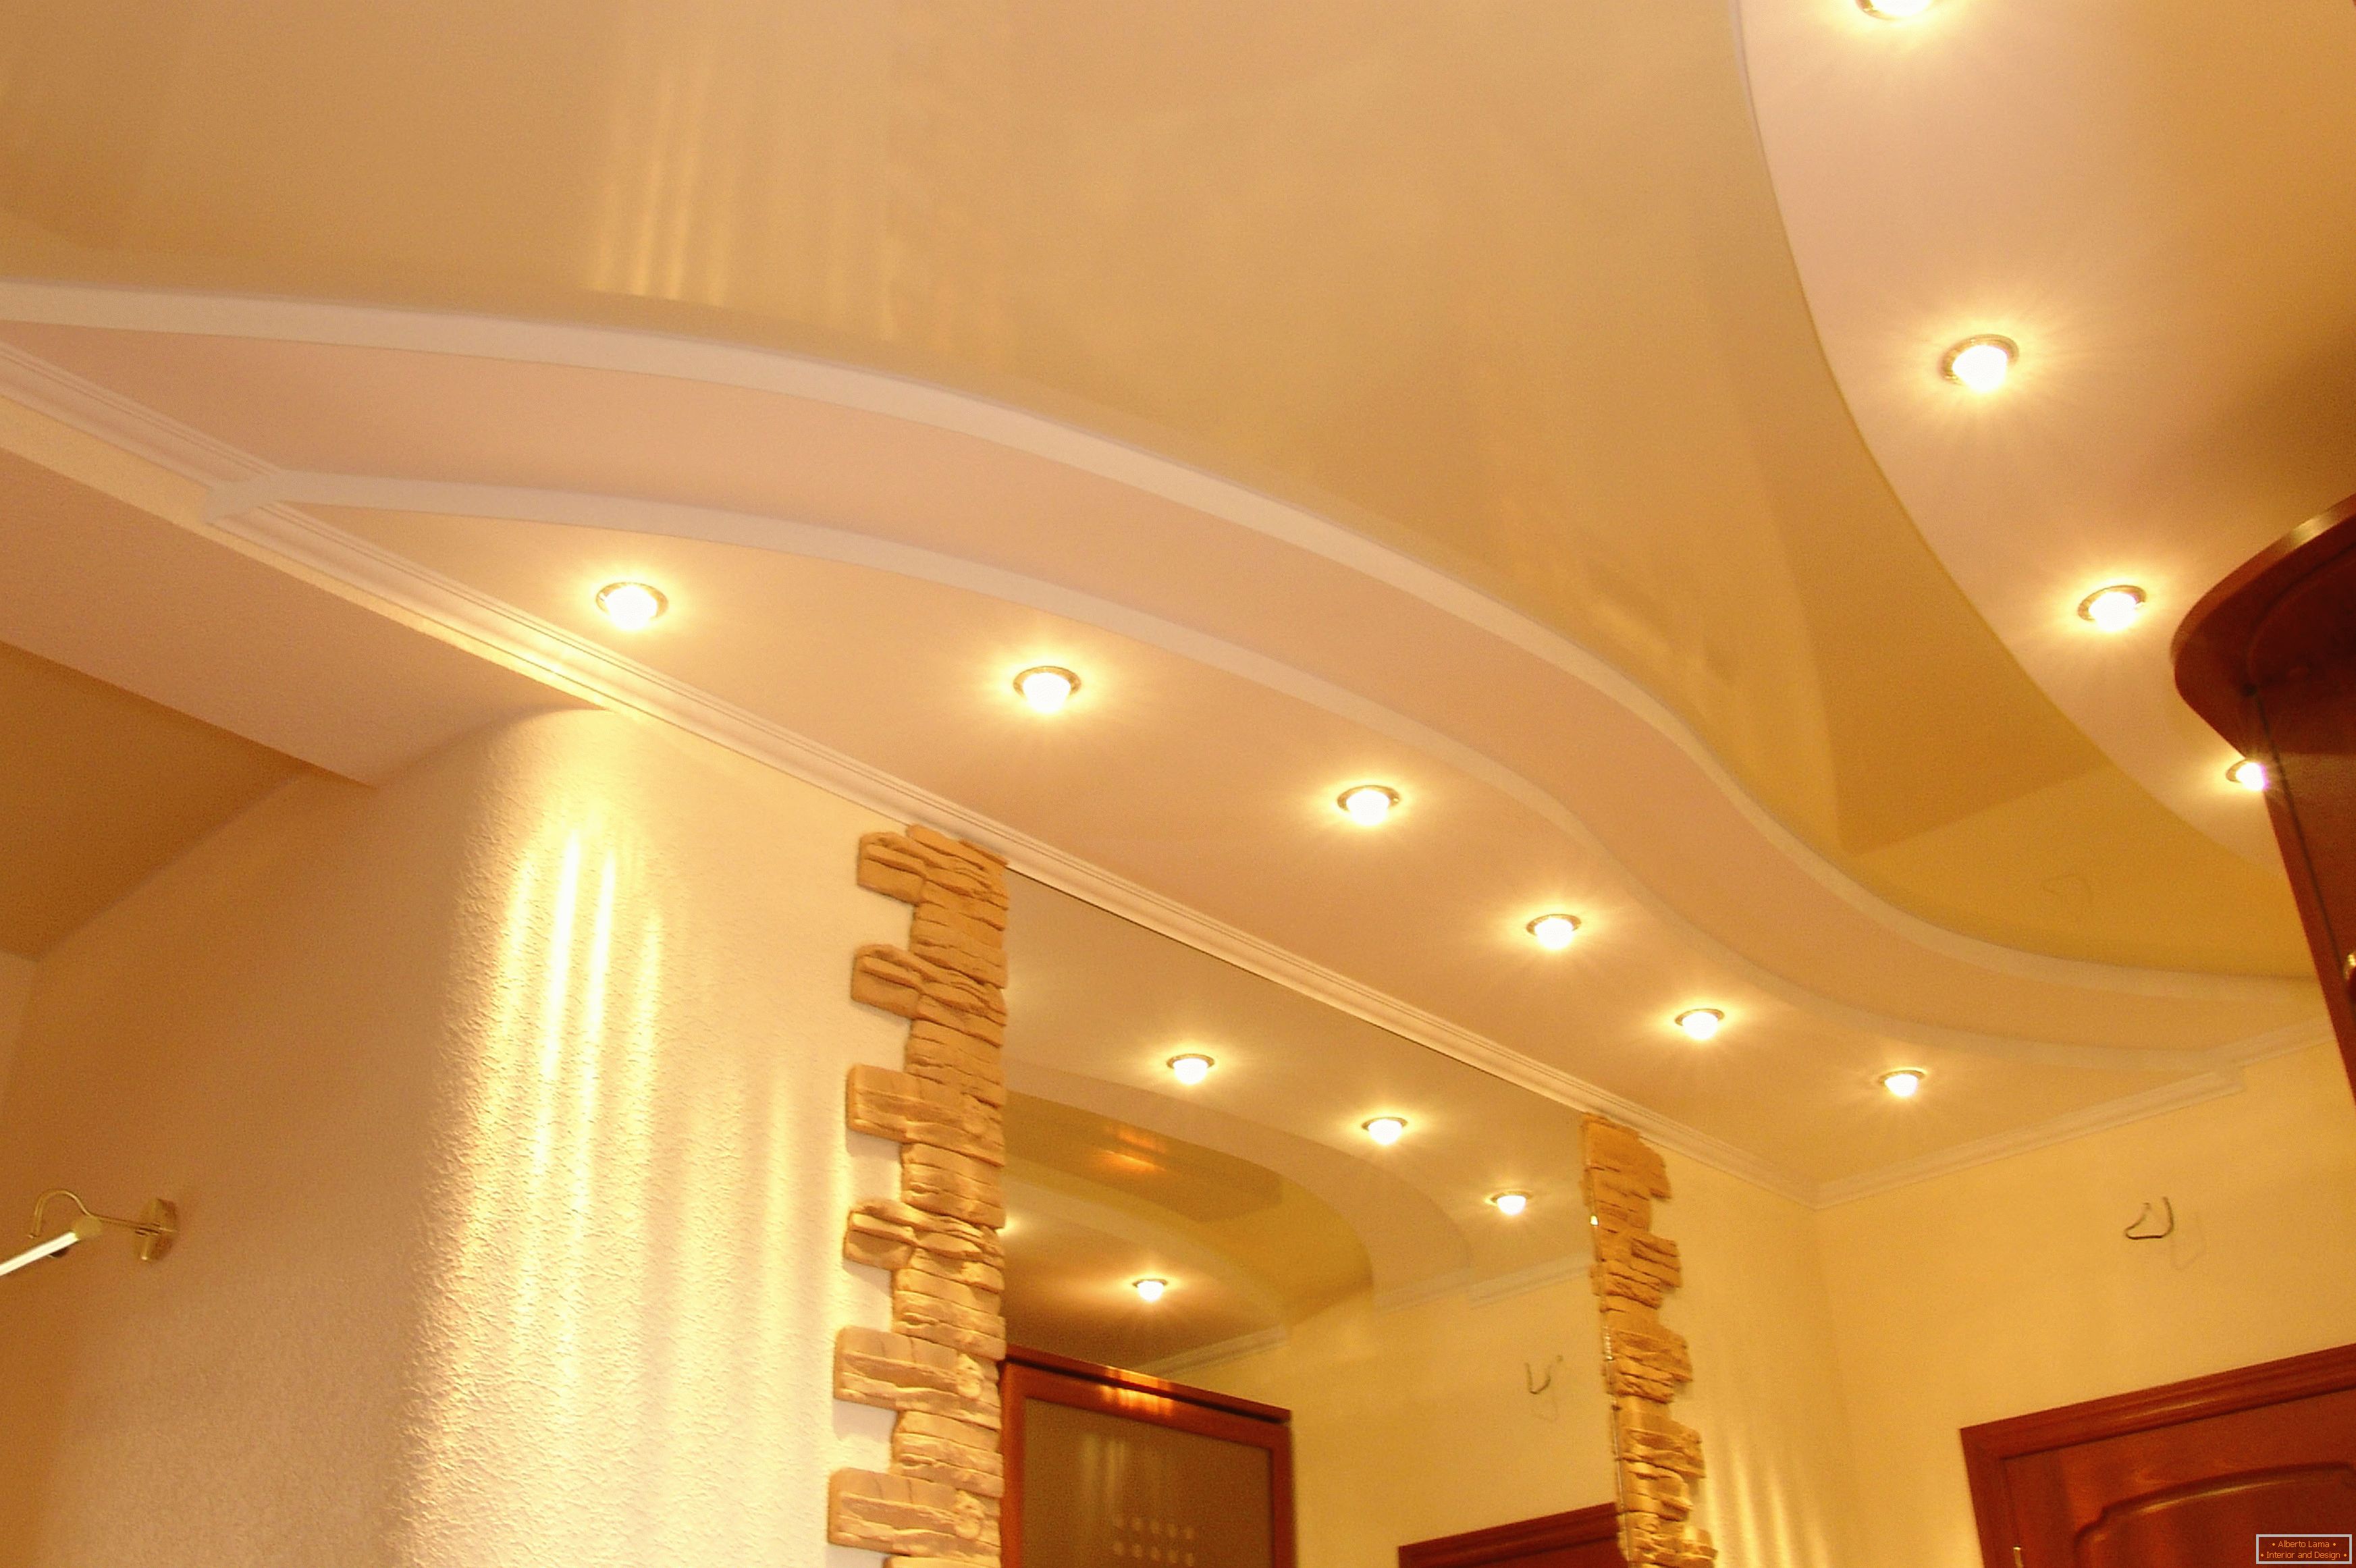 Plafond correctement décoré dans le couloir. Éclairage ponctuel - l'option la plus acceptable pour les plafonds tendus en PVC.